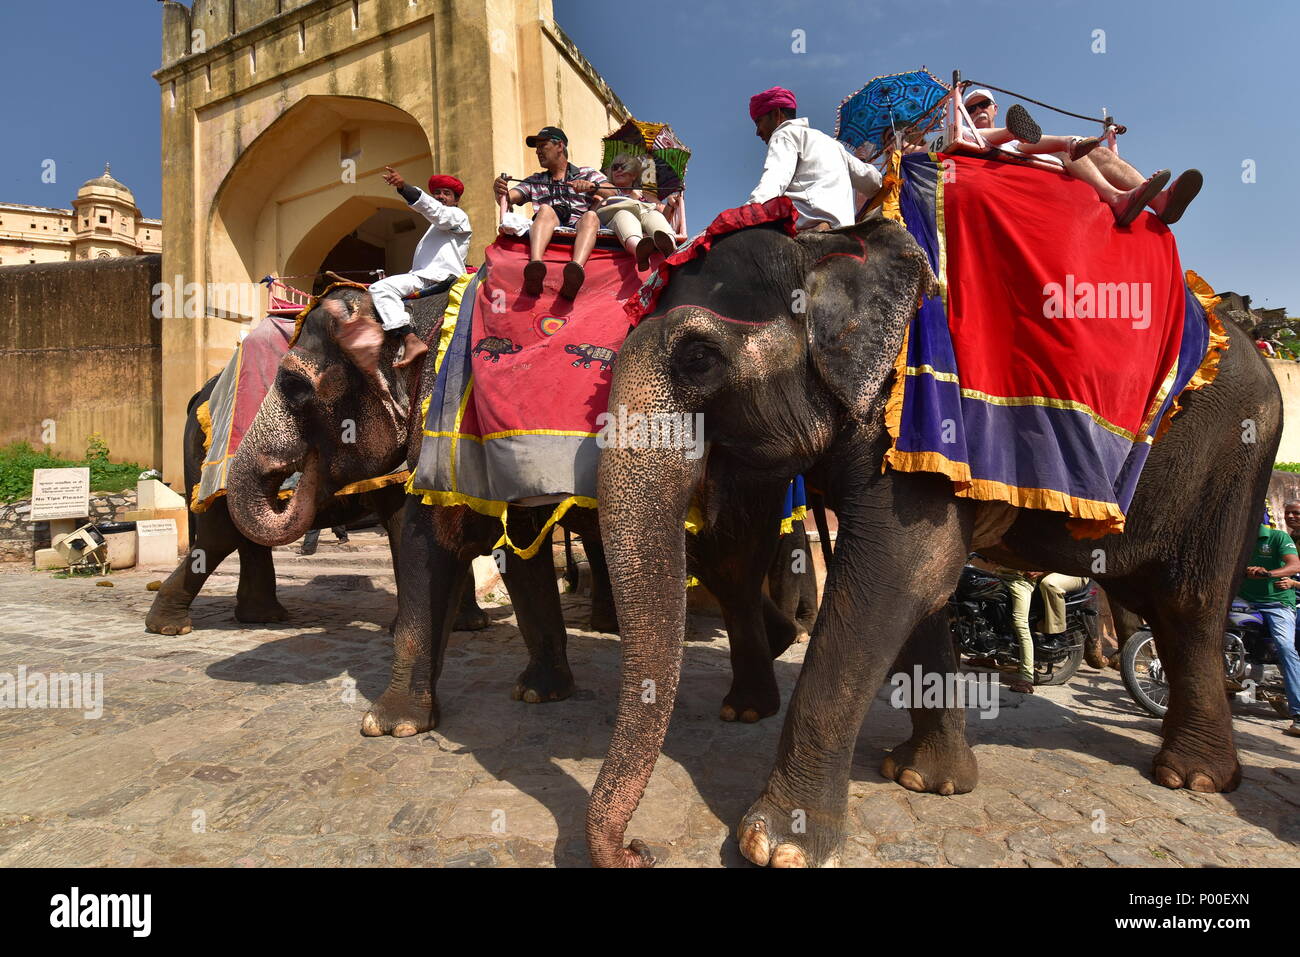 Elephant Riding at Amer Fort, Jaipur, India Stock Photo